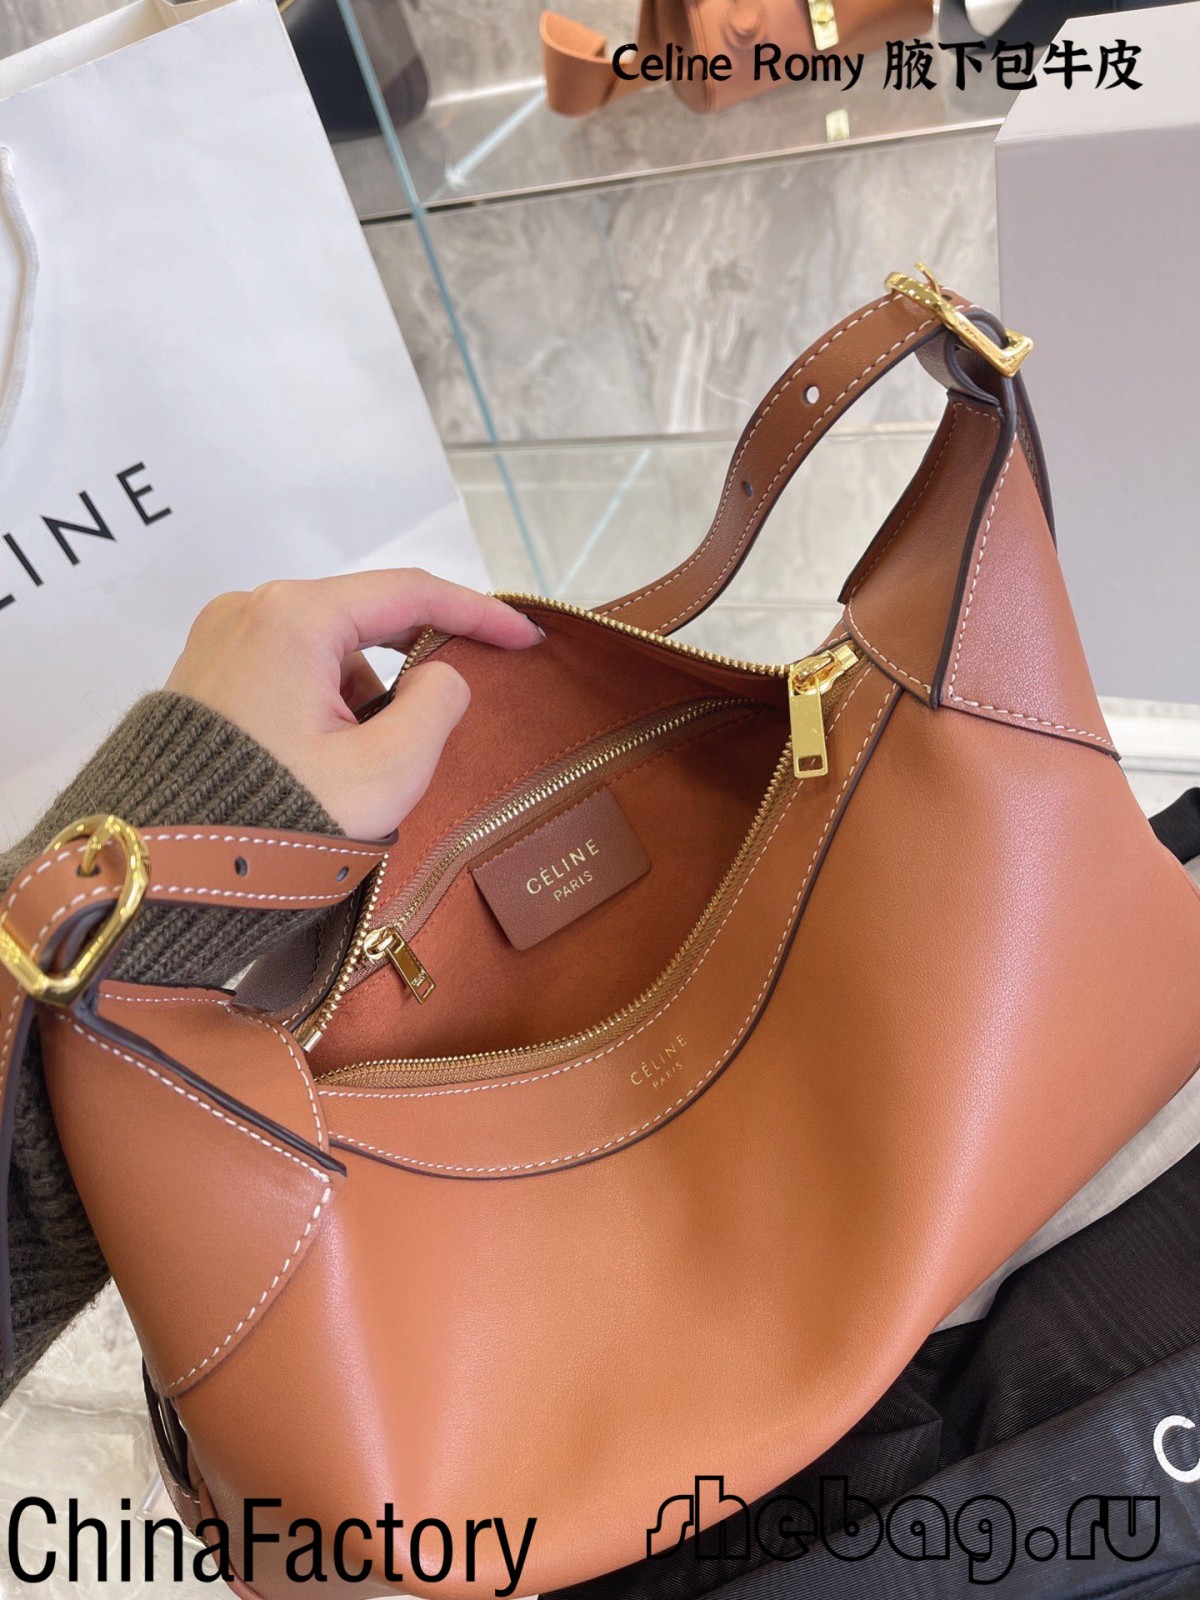 Best replica celine bags reviews: Celine Romy (2022 edition)-Best Quality Fake designer Bag Review, Replica designer bag ru